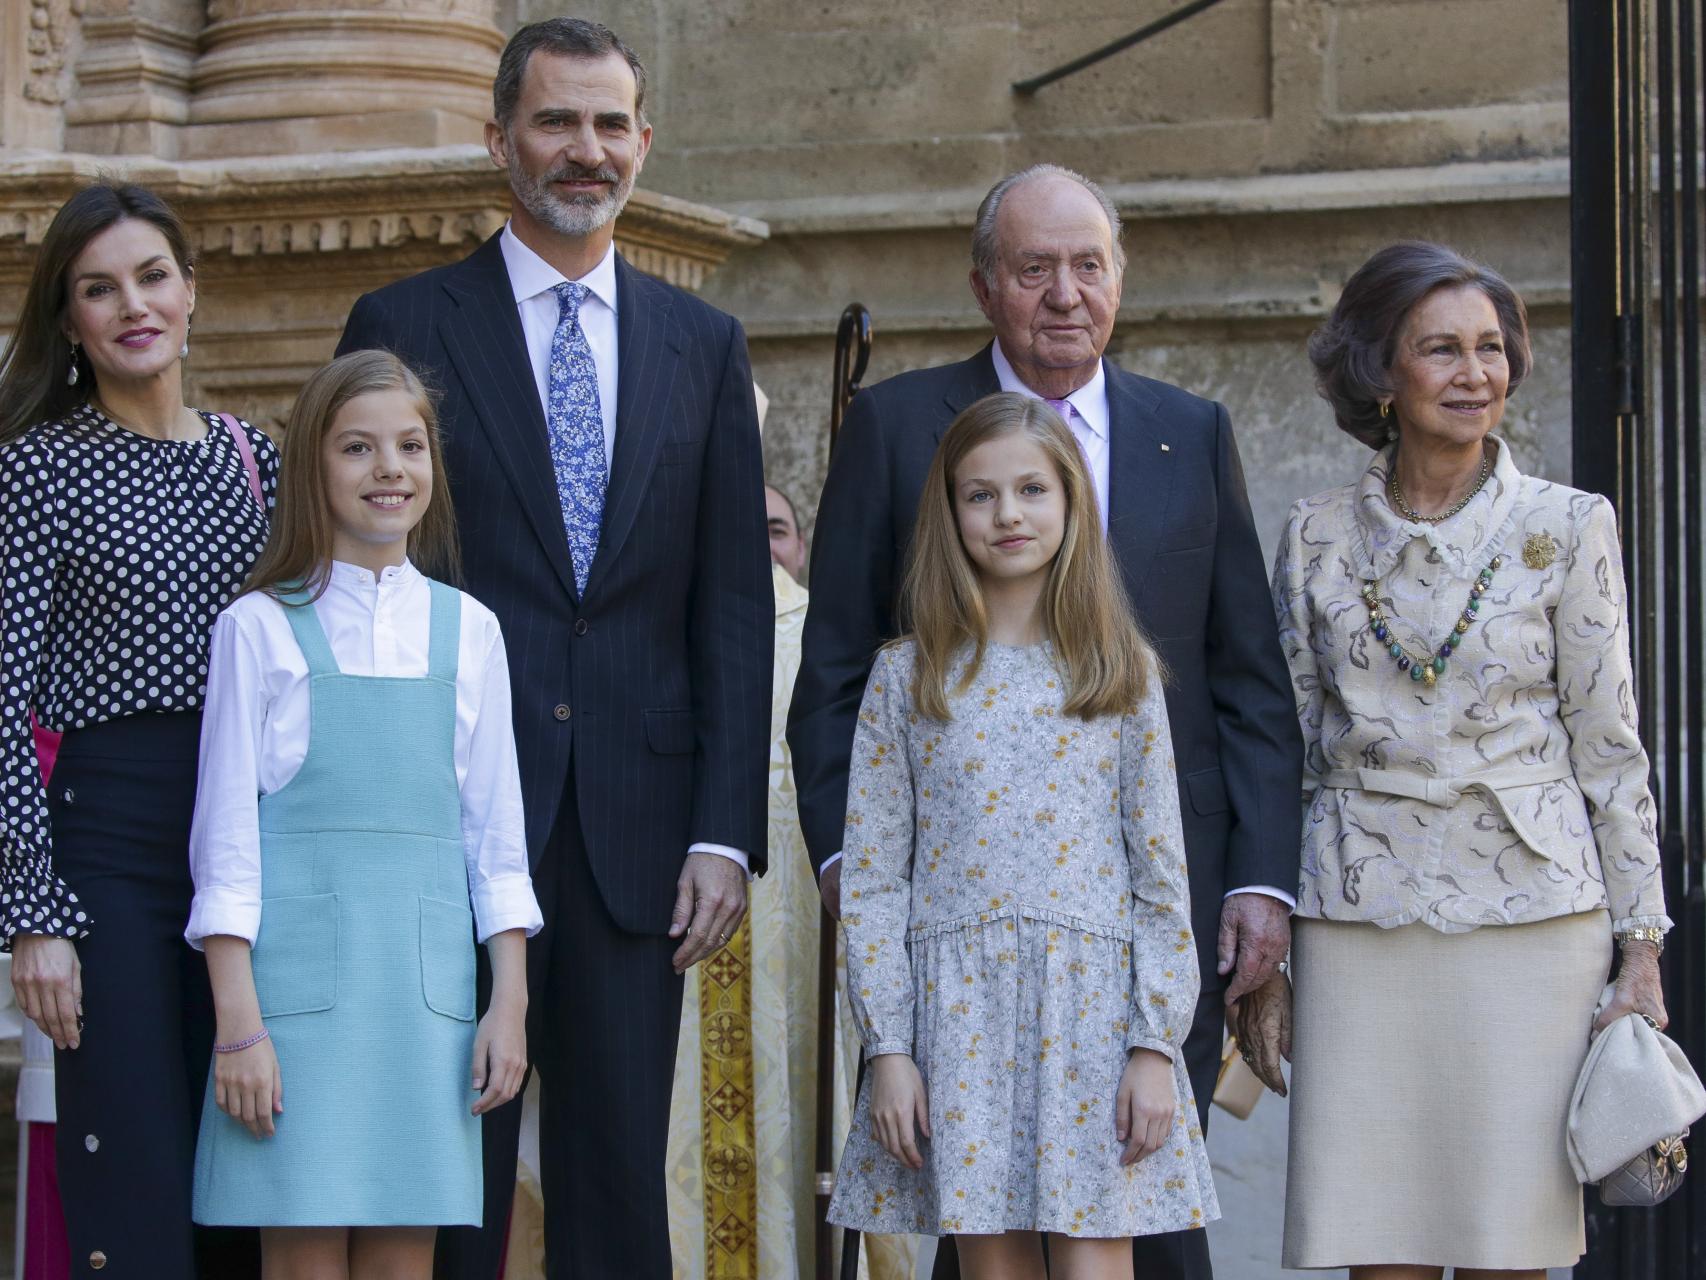 La Familia Real al completo a las puertas de la catedral de Palma en abril de 2018.